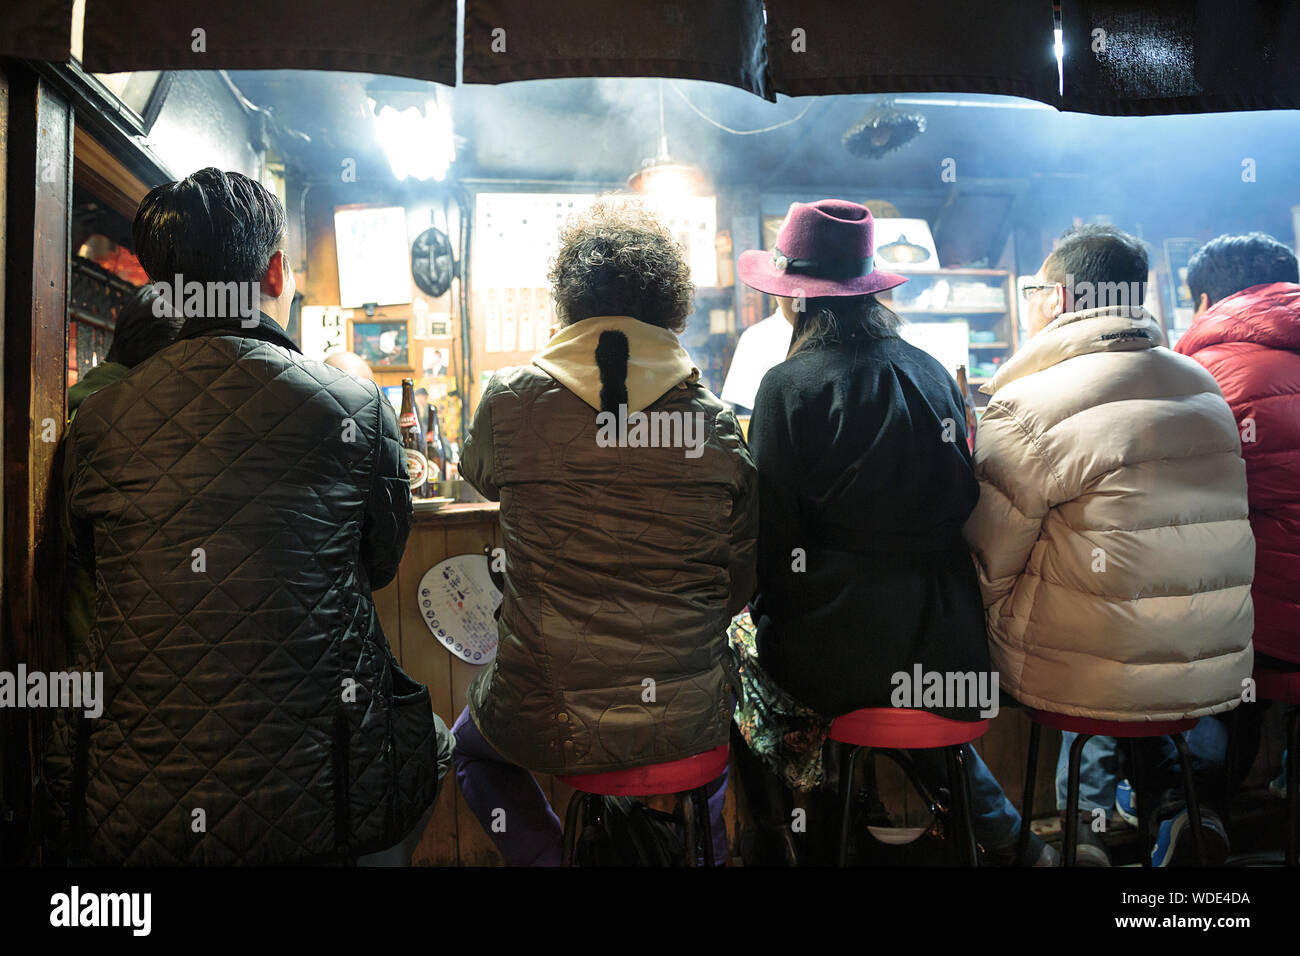 People enjoy drinks and street food inside a small pub in Omoide Yokocho alley. Stock Photo